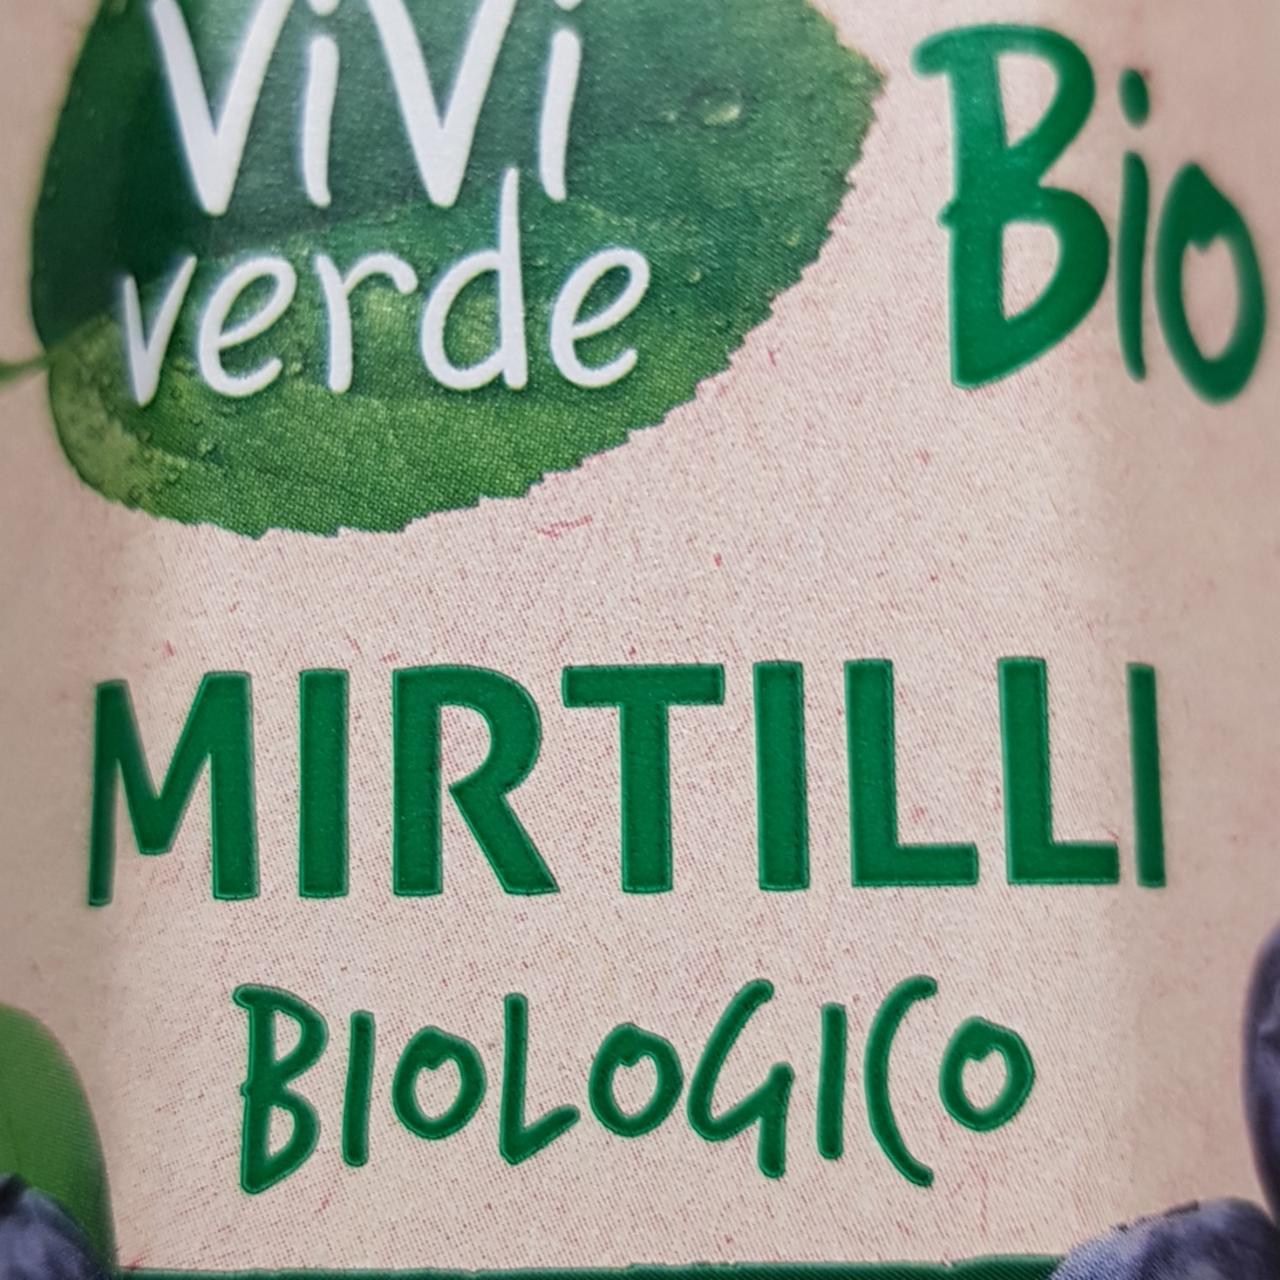 Fotografie - Bio mirtilli biologico Vivi Verde